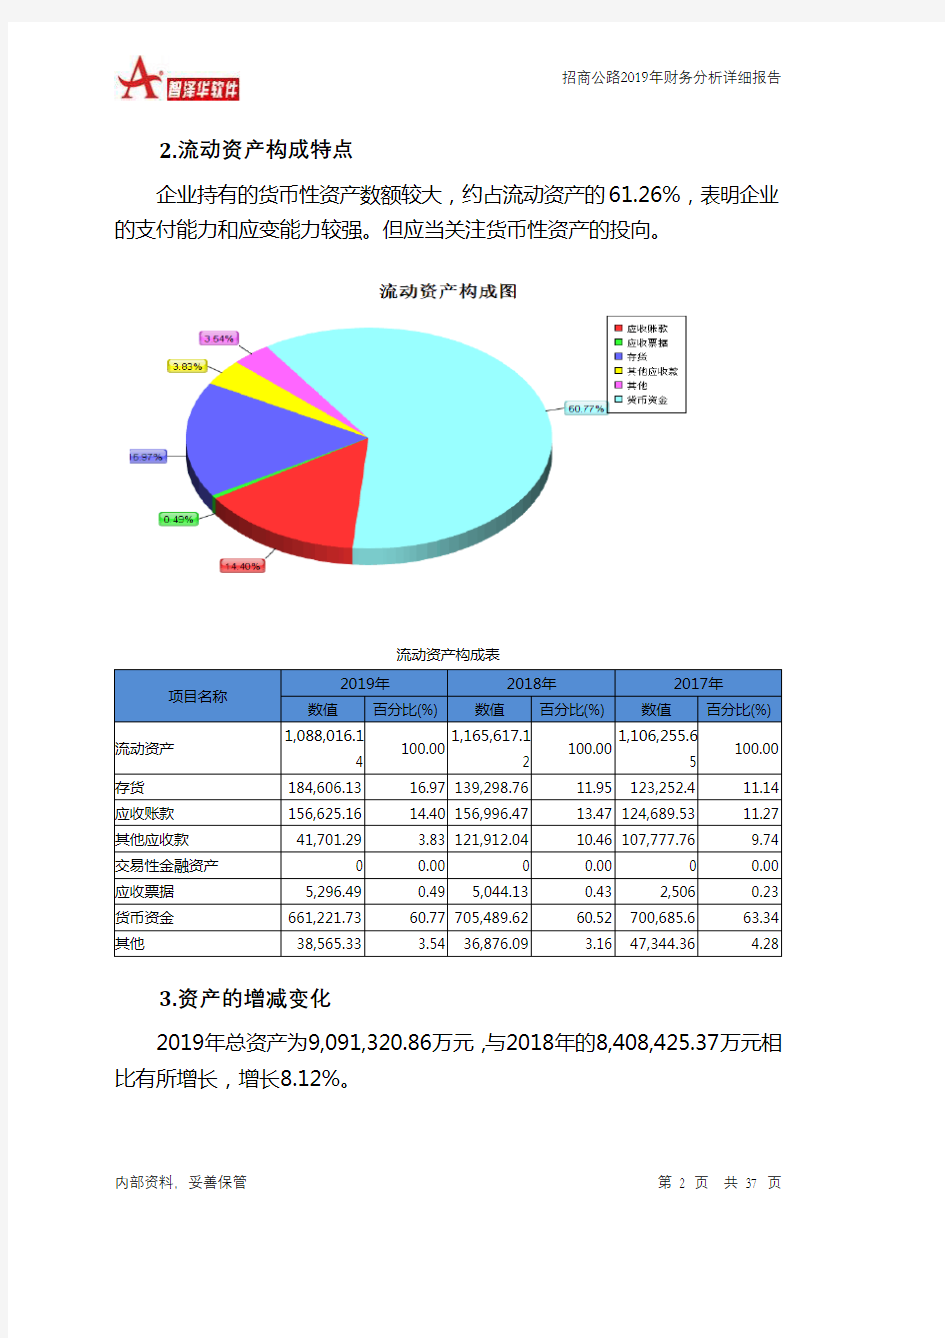 招商公路2019年财务分析详细报告